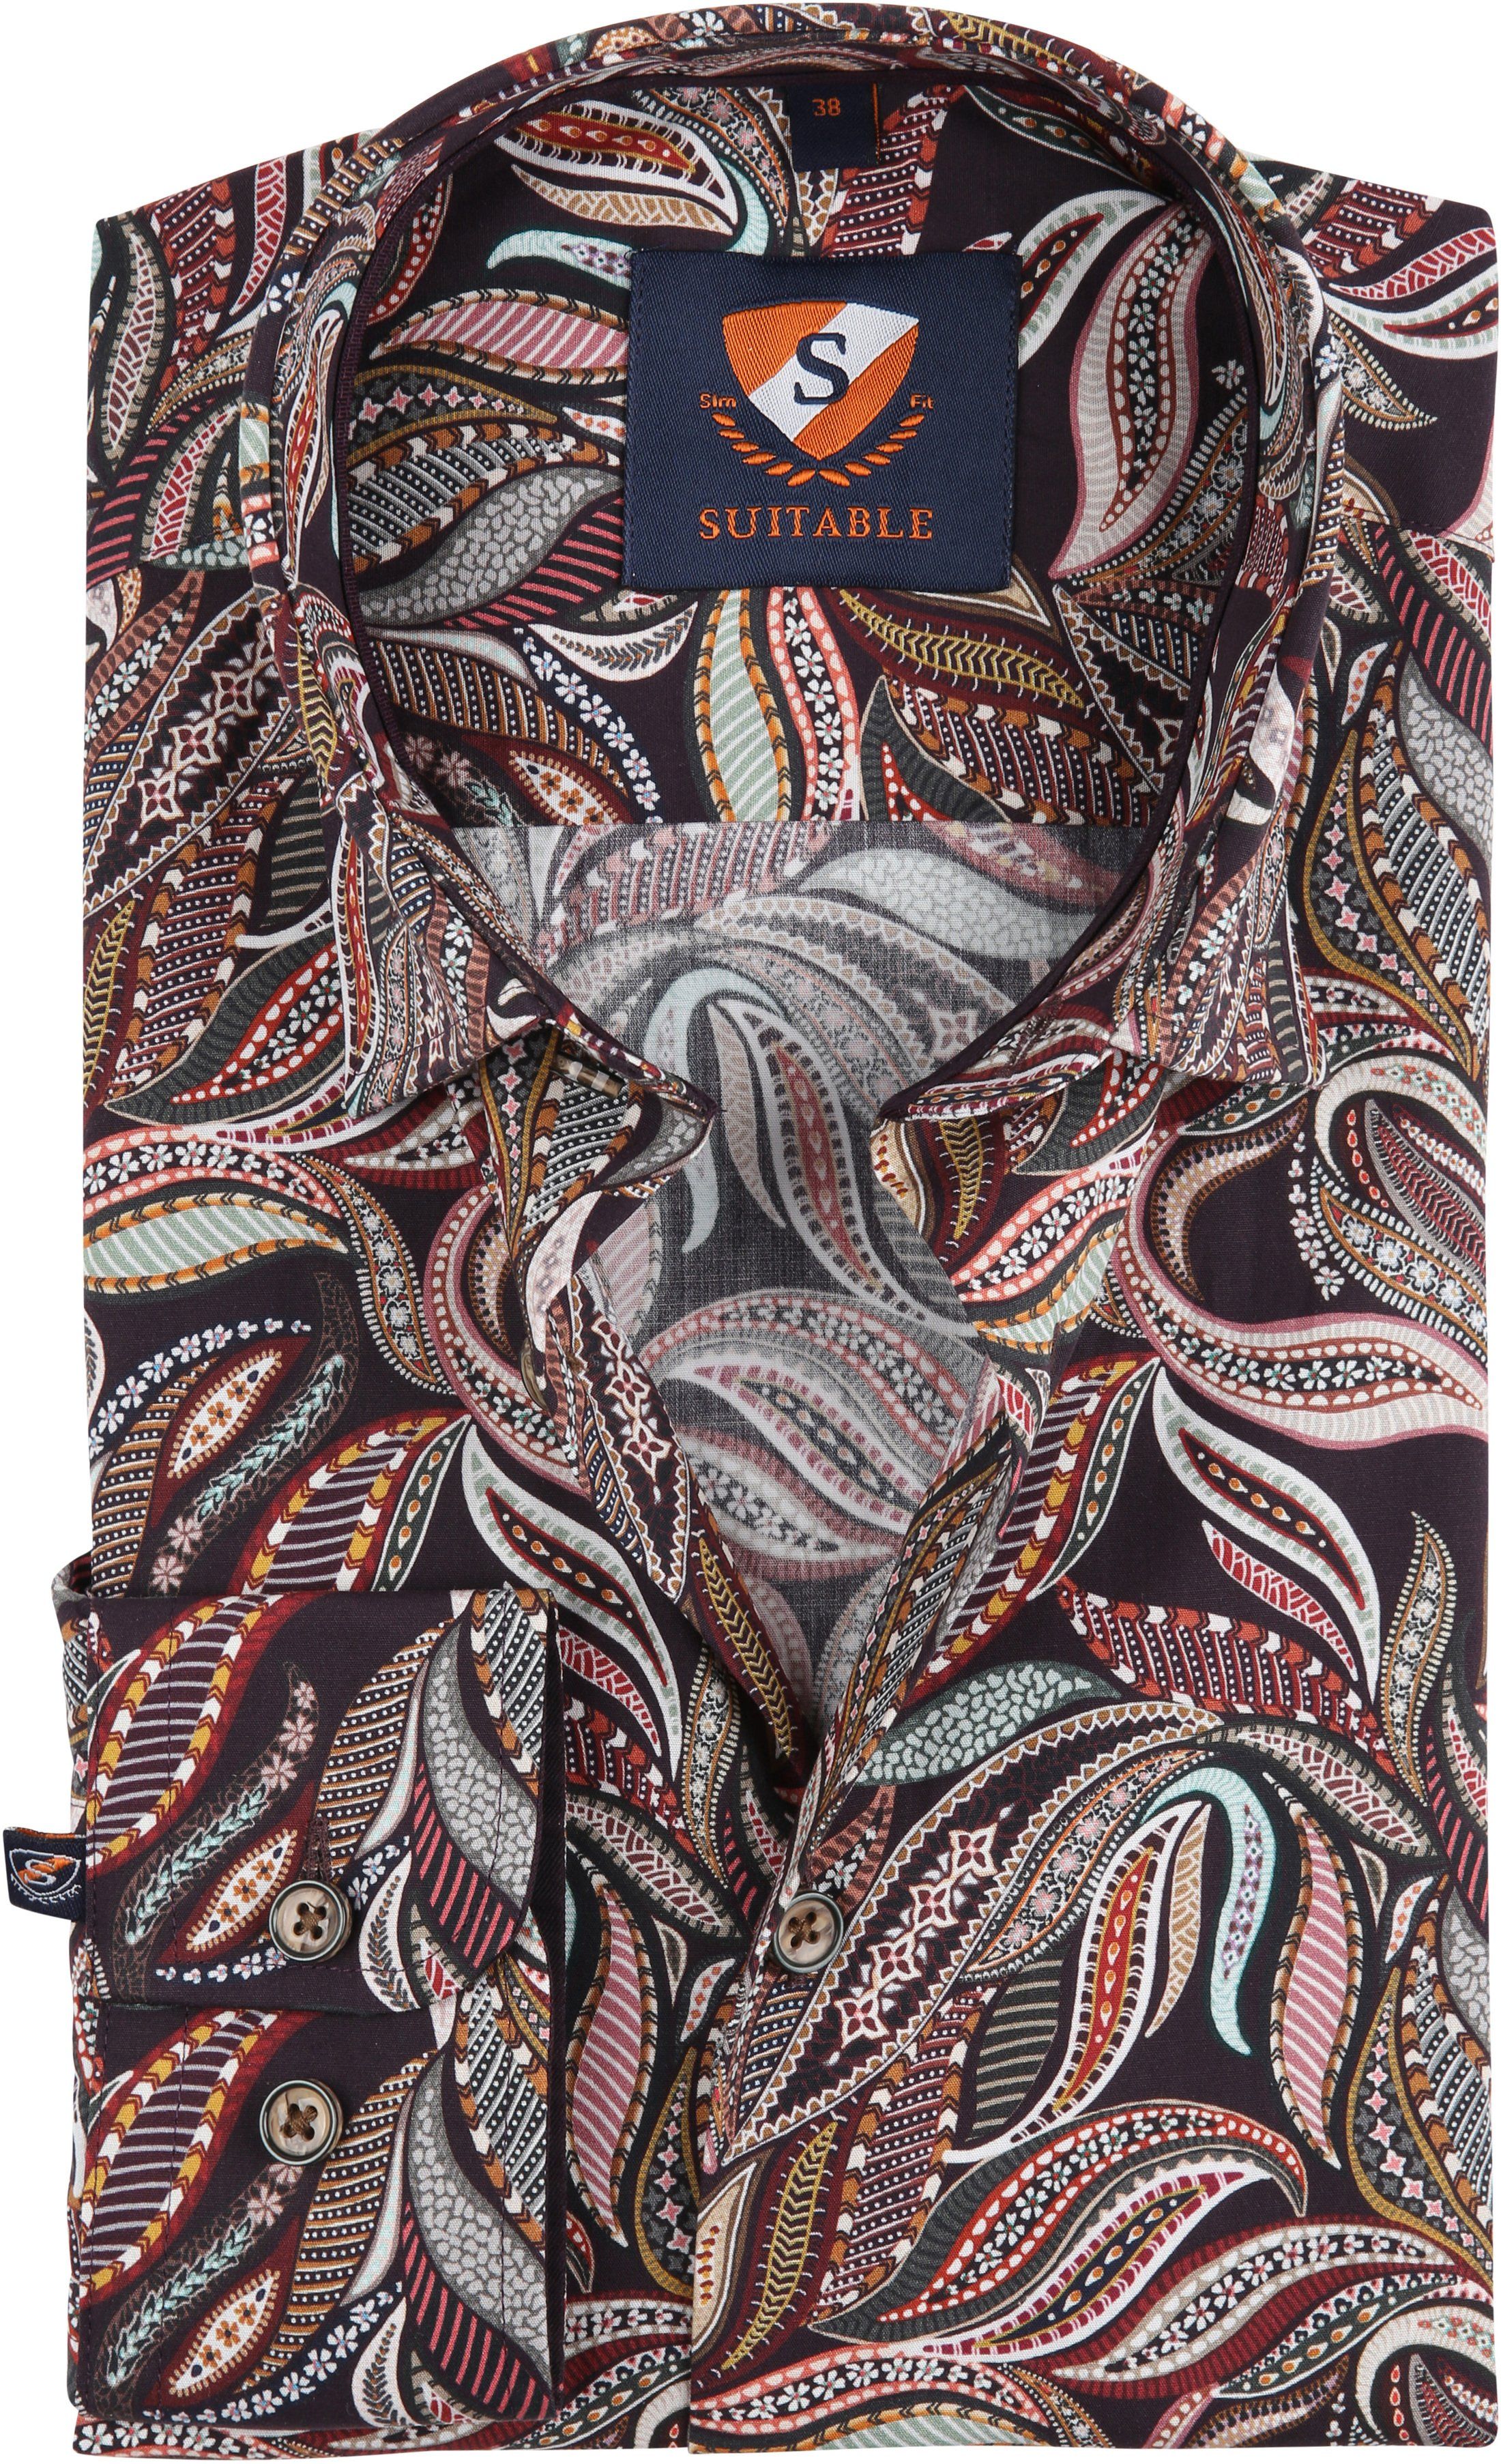 Suitable Shirt Paisley 188-3 Multicolour size 15